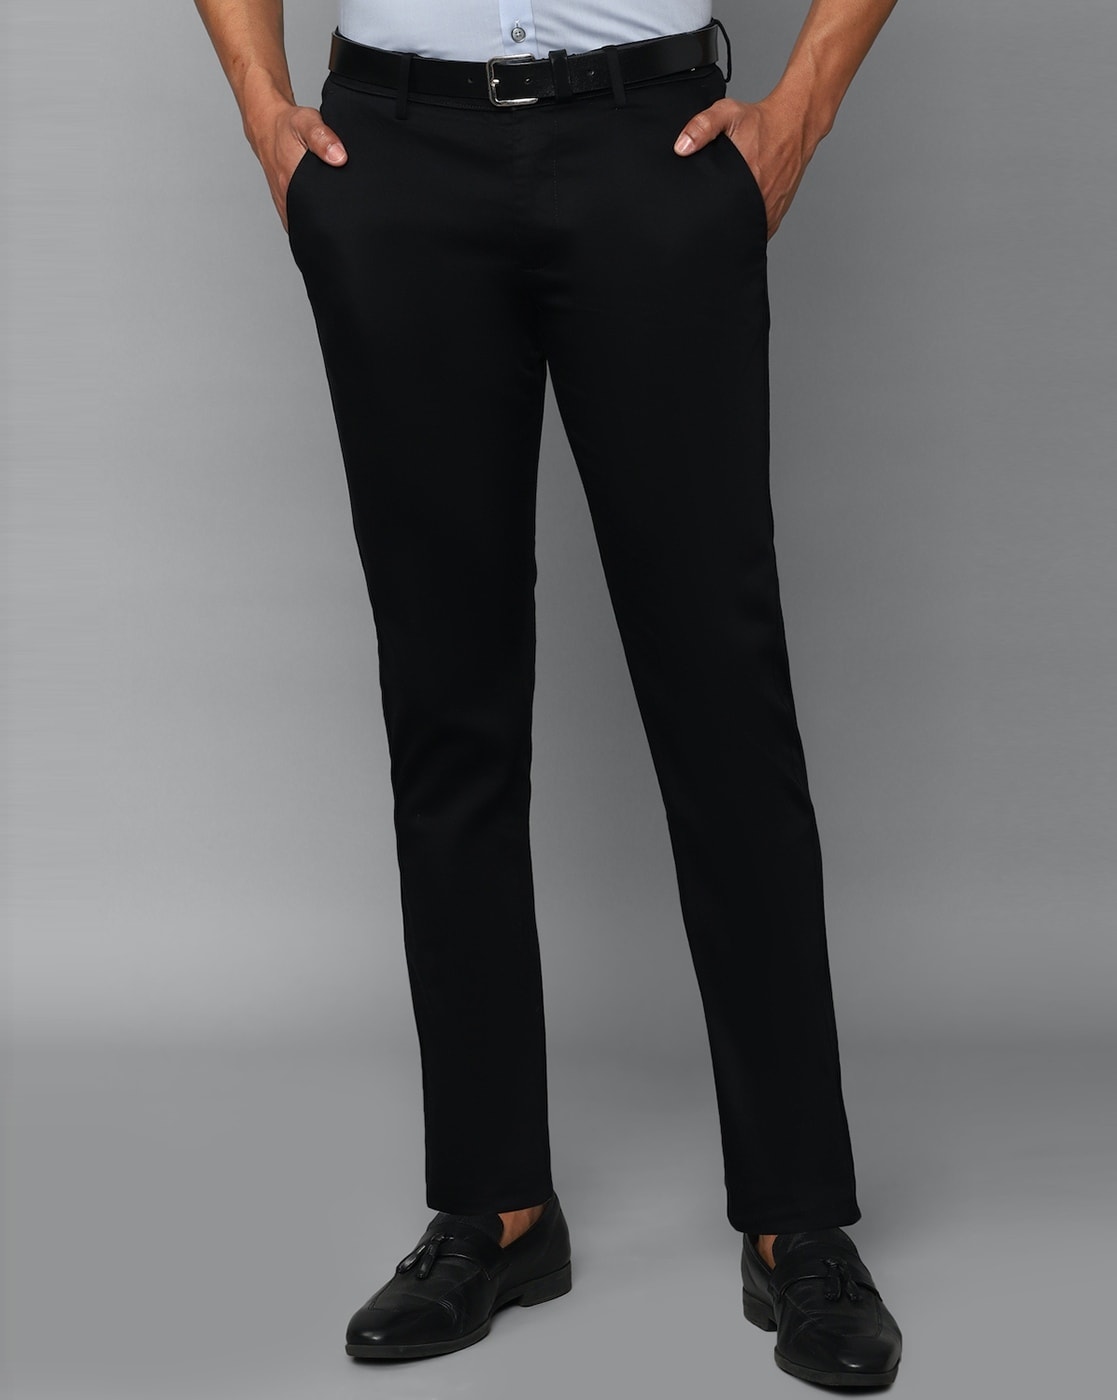 Allen Solly Trousers - Buy Allen Solly Trousers Online at Best Prices In  India | Flipkart.com